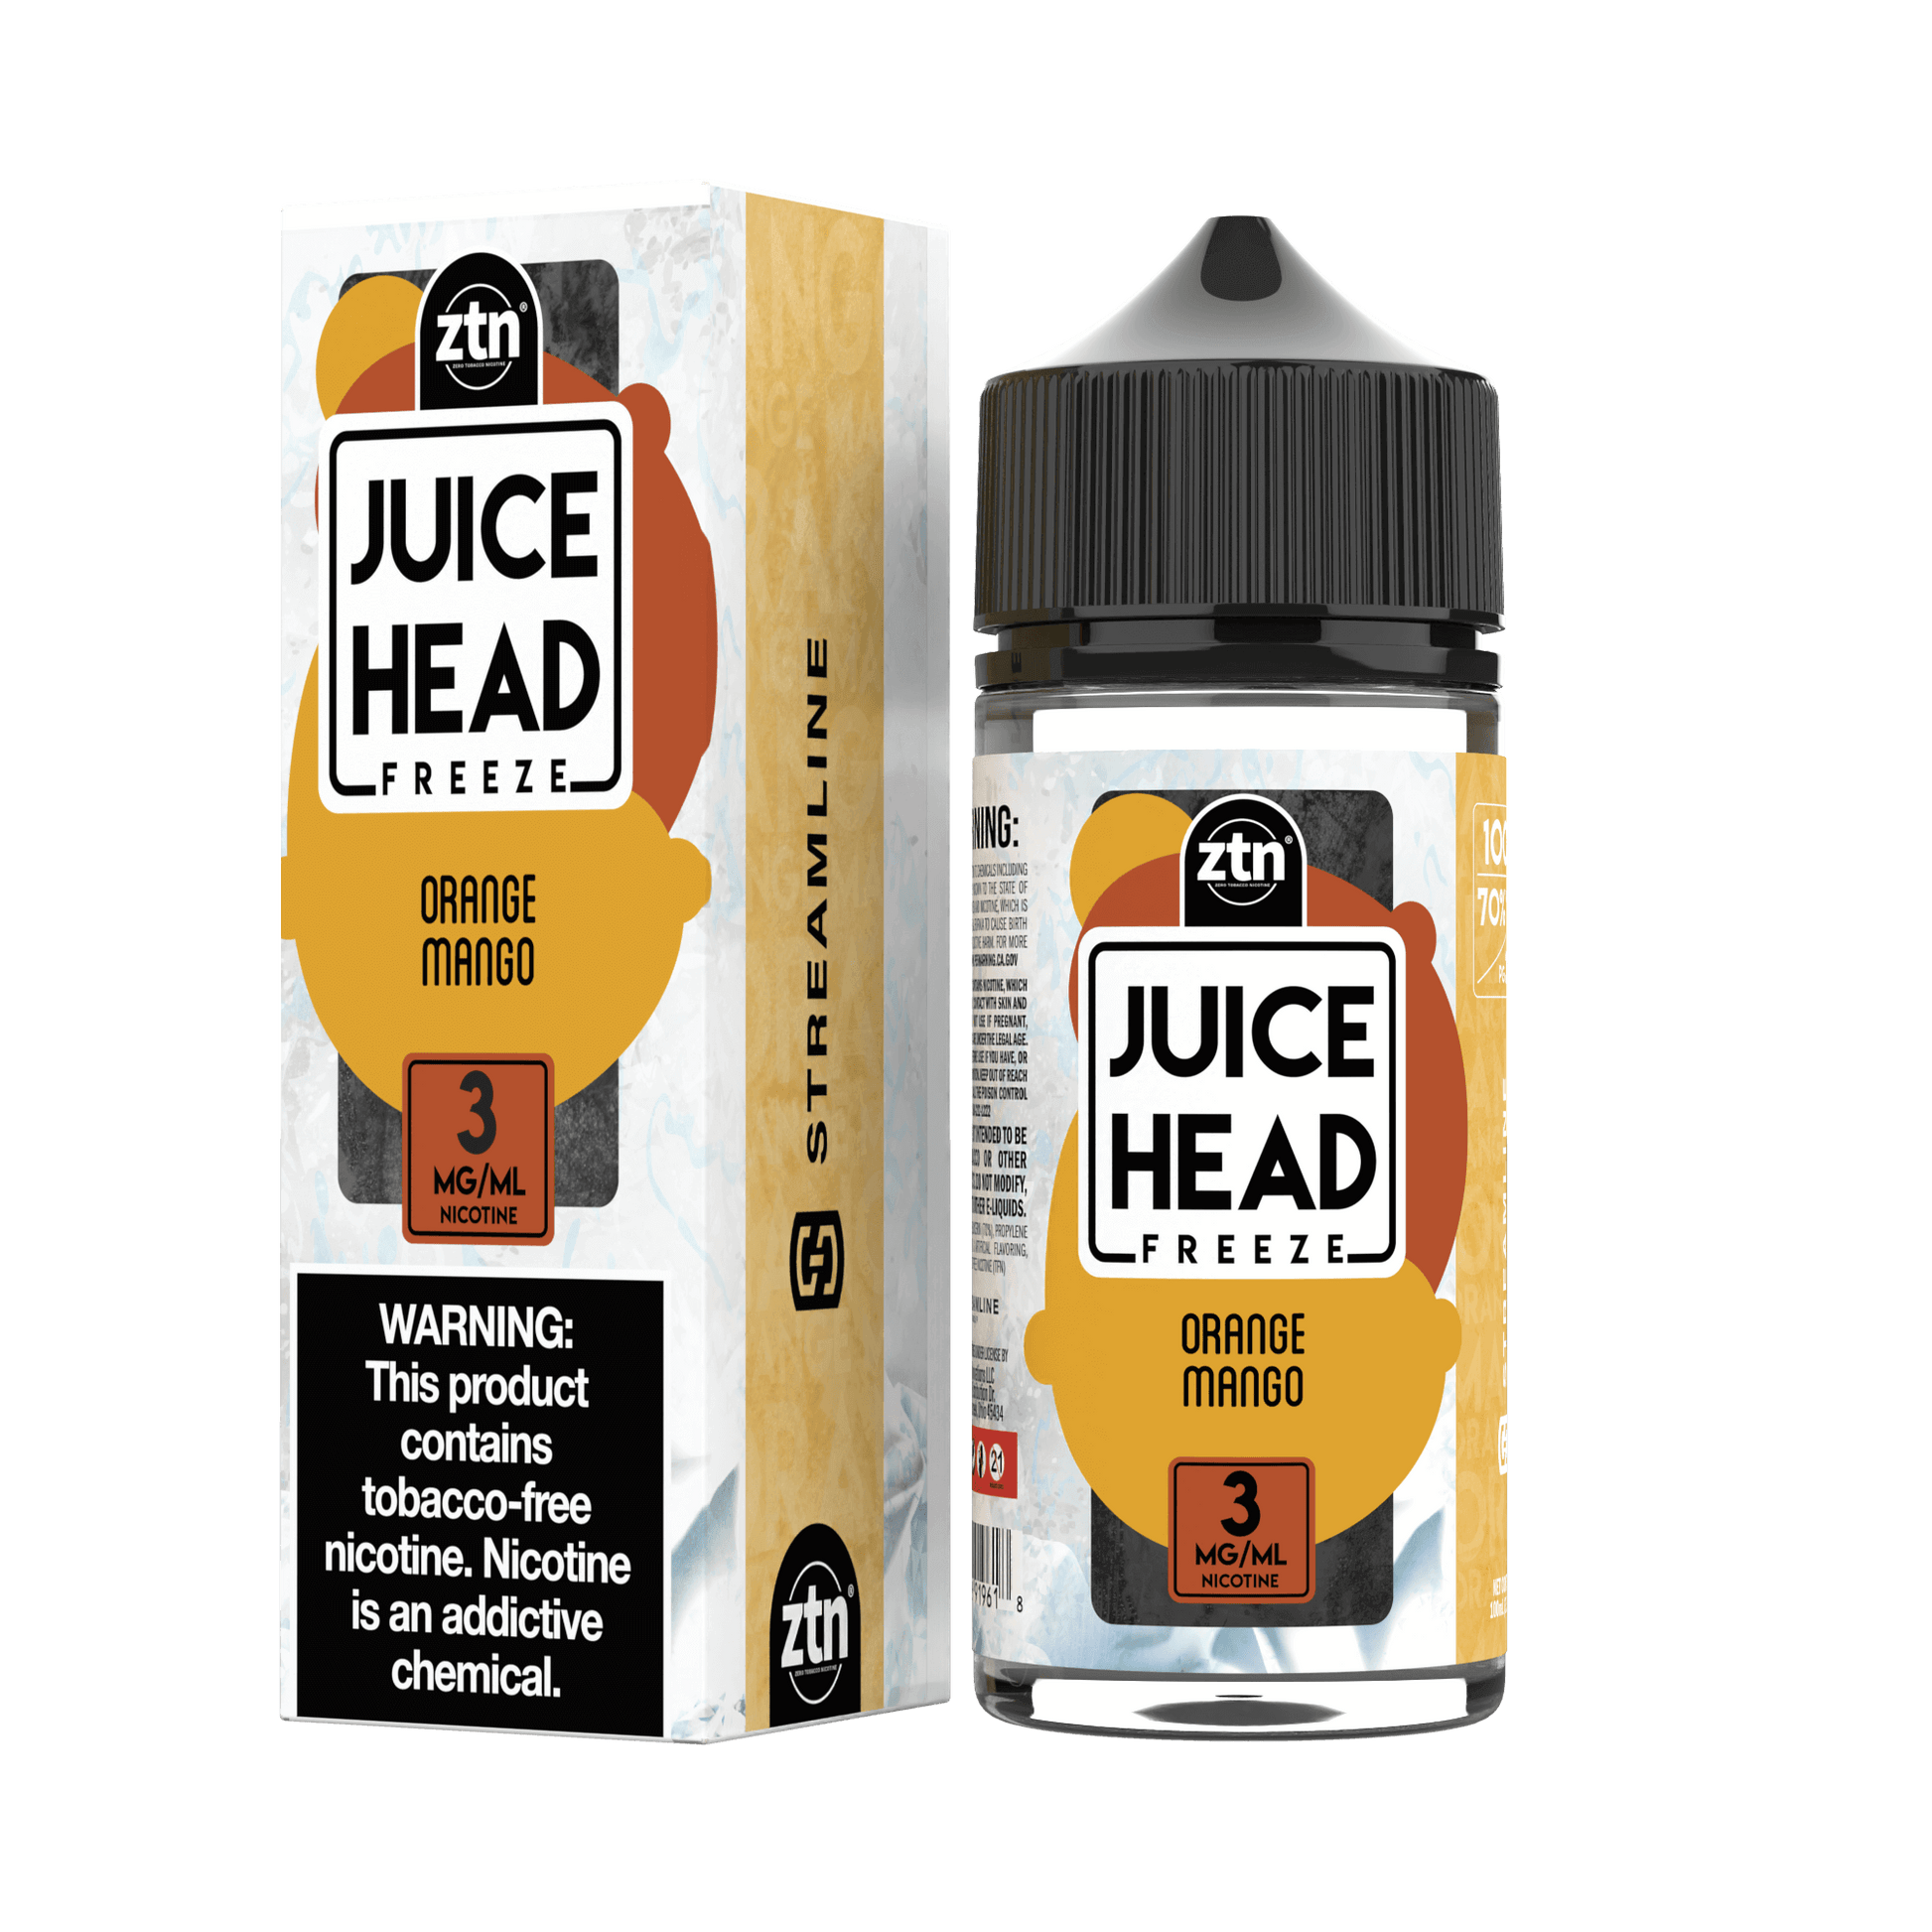 Orange Mango Freeze (ZTN) by Streamline - Juice Head 100mL with packaging